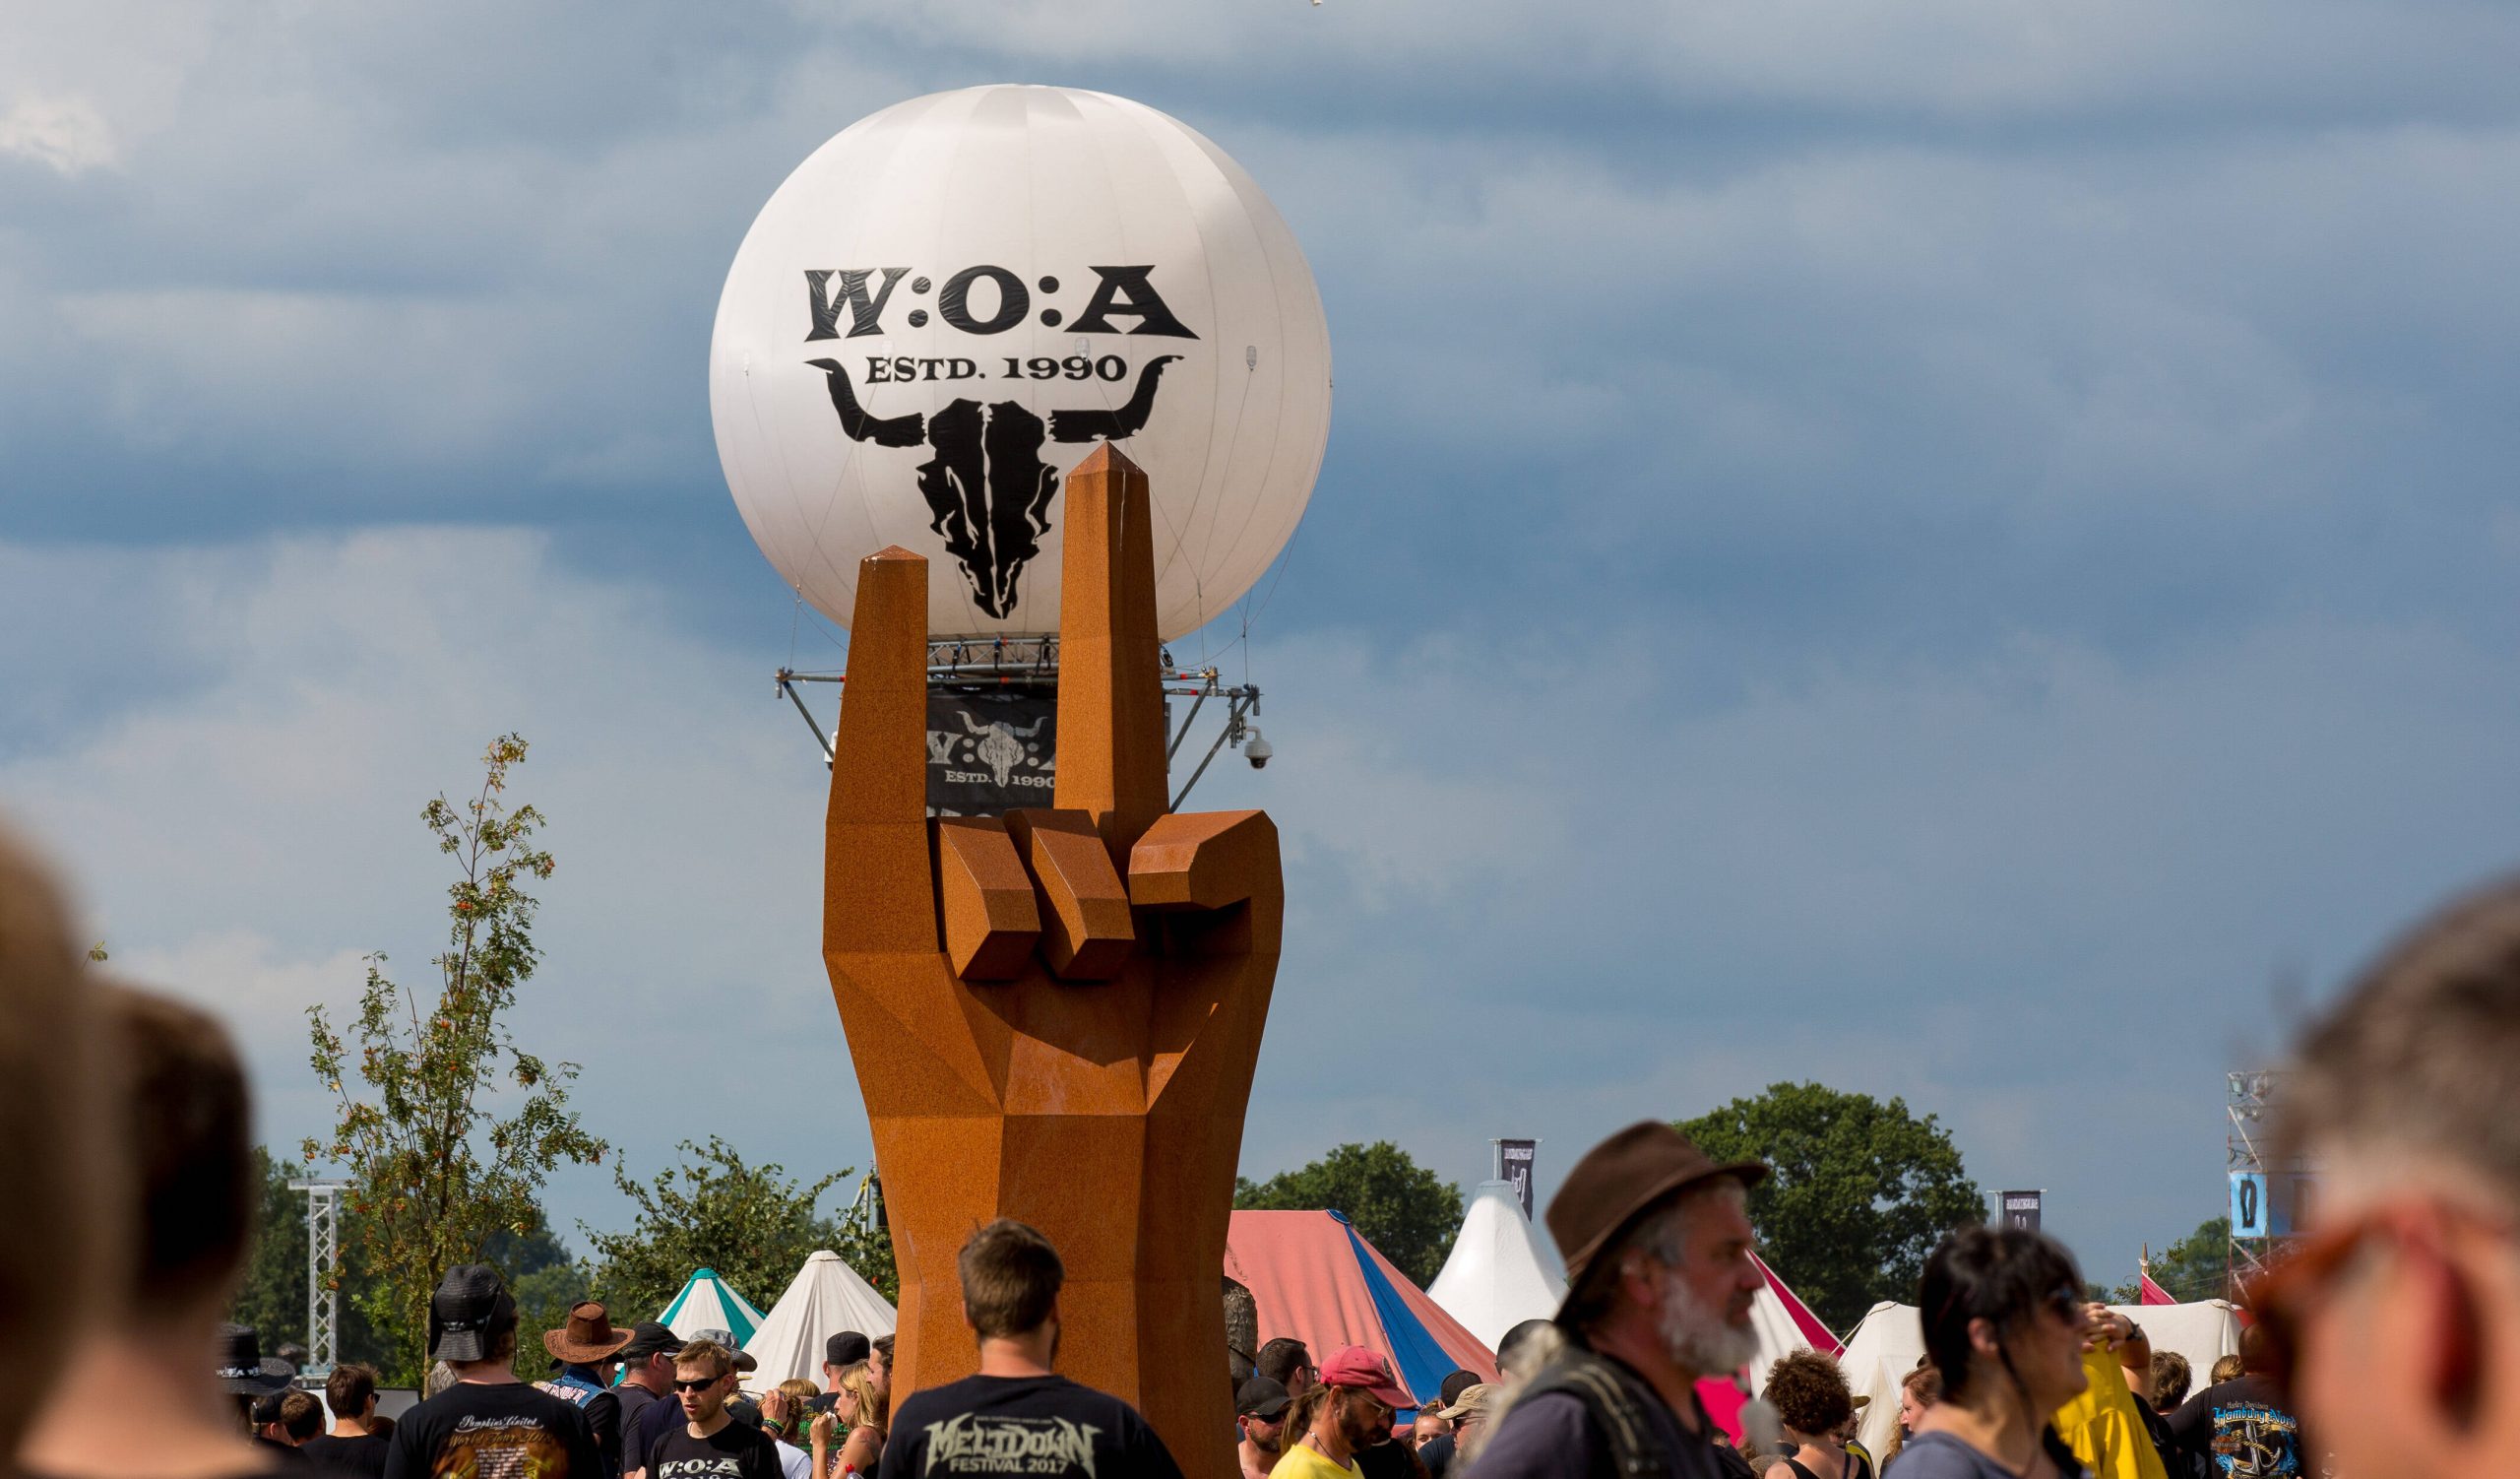 Nach dem großen Open Air fällt auch das kleinere Wacken-Festival wegen der Corona-Pandemie aus.